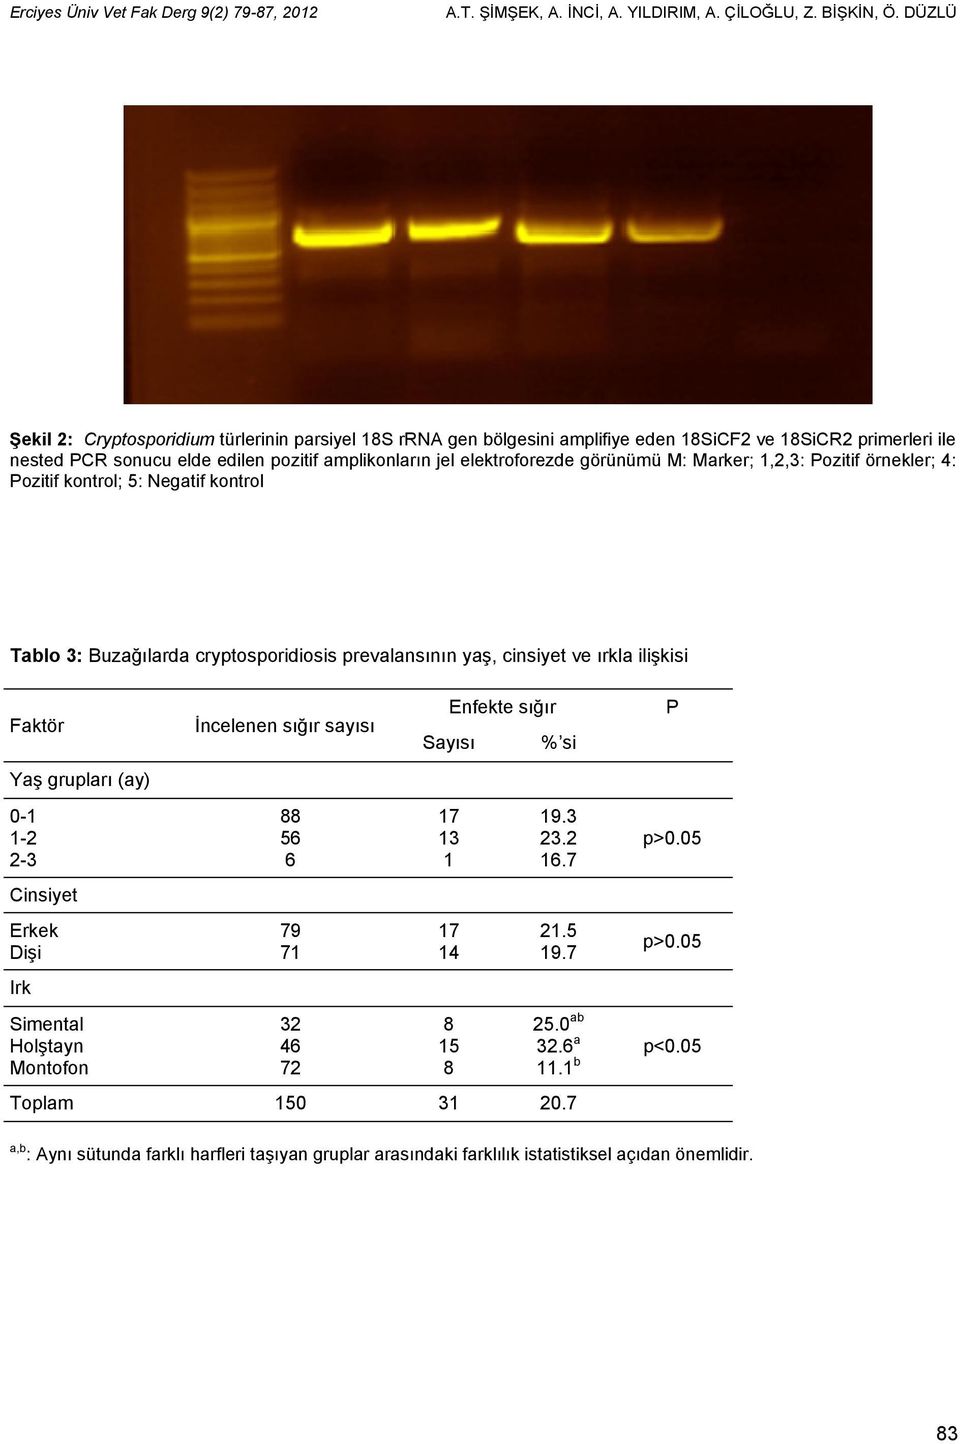 görünümü M: Marker; 1,2,3: Pozitif örnekler; 4: Pozitif kontrol; 5: Negatif kontrol Tablo 3: Buzağılarda cryptosporidiosis prevalansının yaş, cinsiyet ve ırkla ilişkisi Faktör Yaş grupları (ay) 0-1